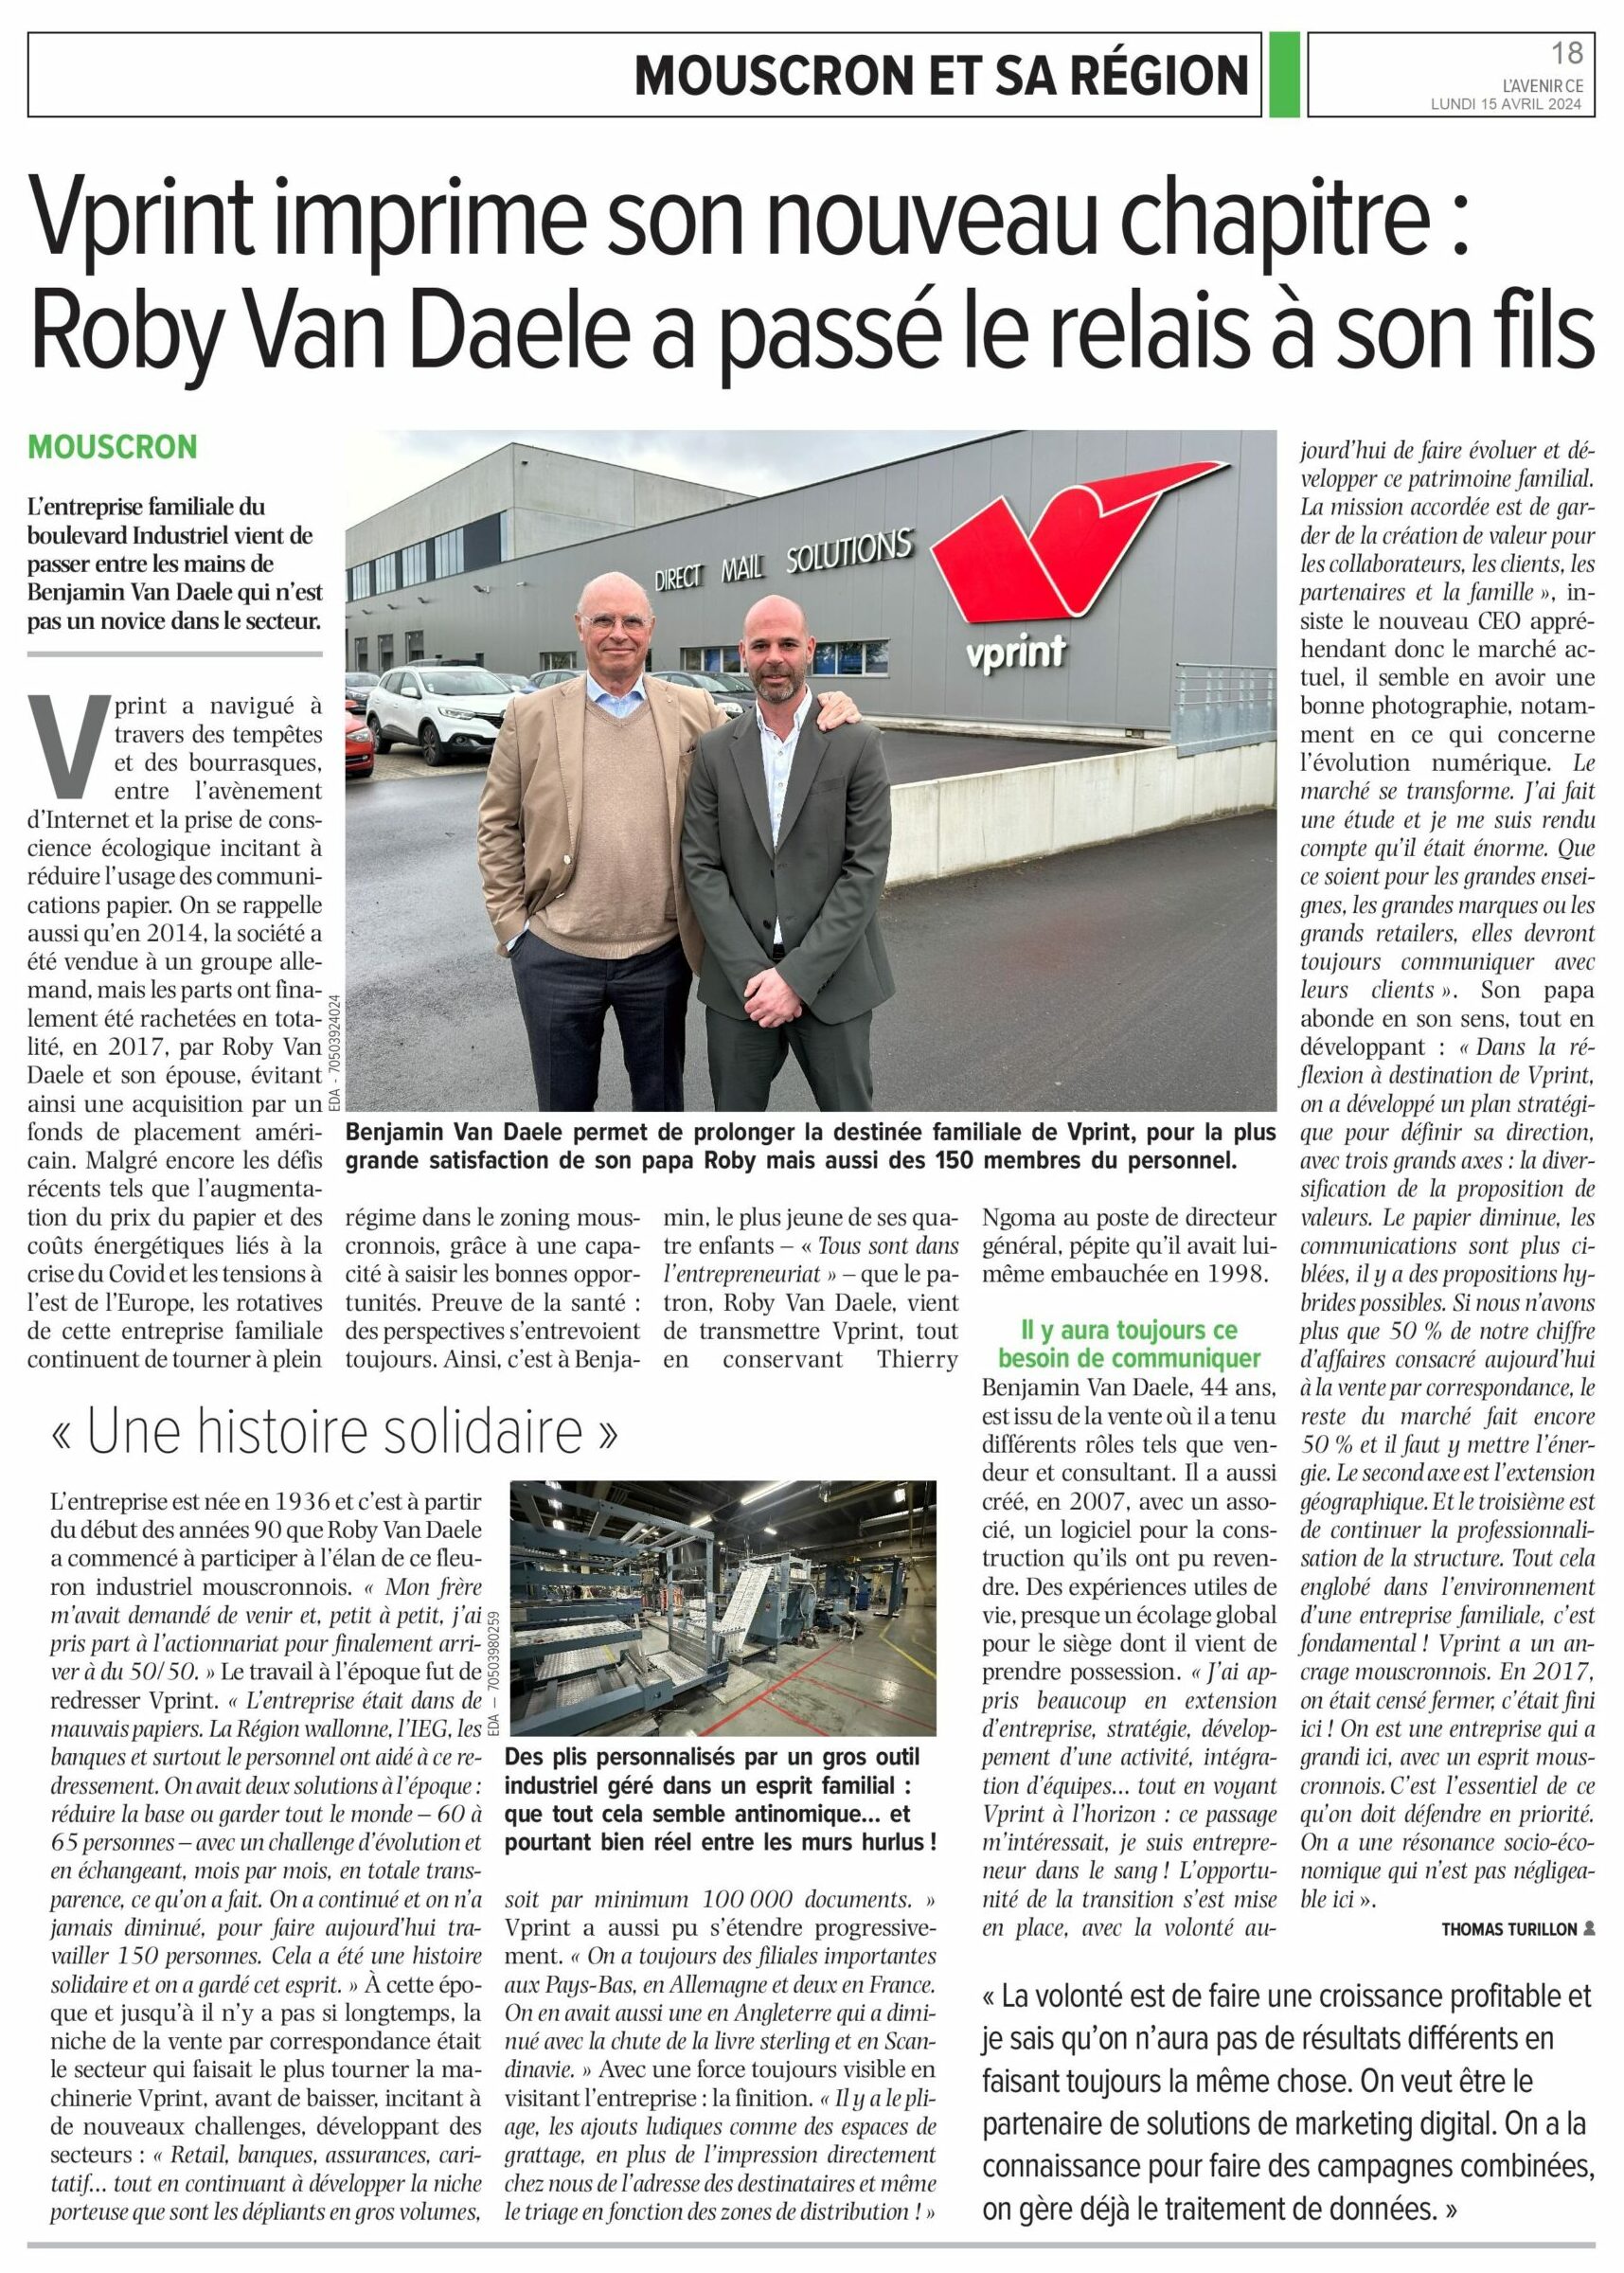 Vprint (Mouscron) imprime son nouveau chapitre : Roby Van Daele a passé le relais à son fils.
L’entreprise familiale du boulevard Industriel vient de passer entre les mains de Benjamin Van Daele qui n’est pas novice dans le secteur.